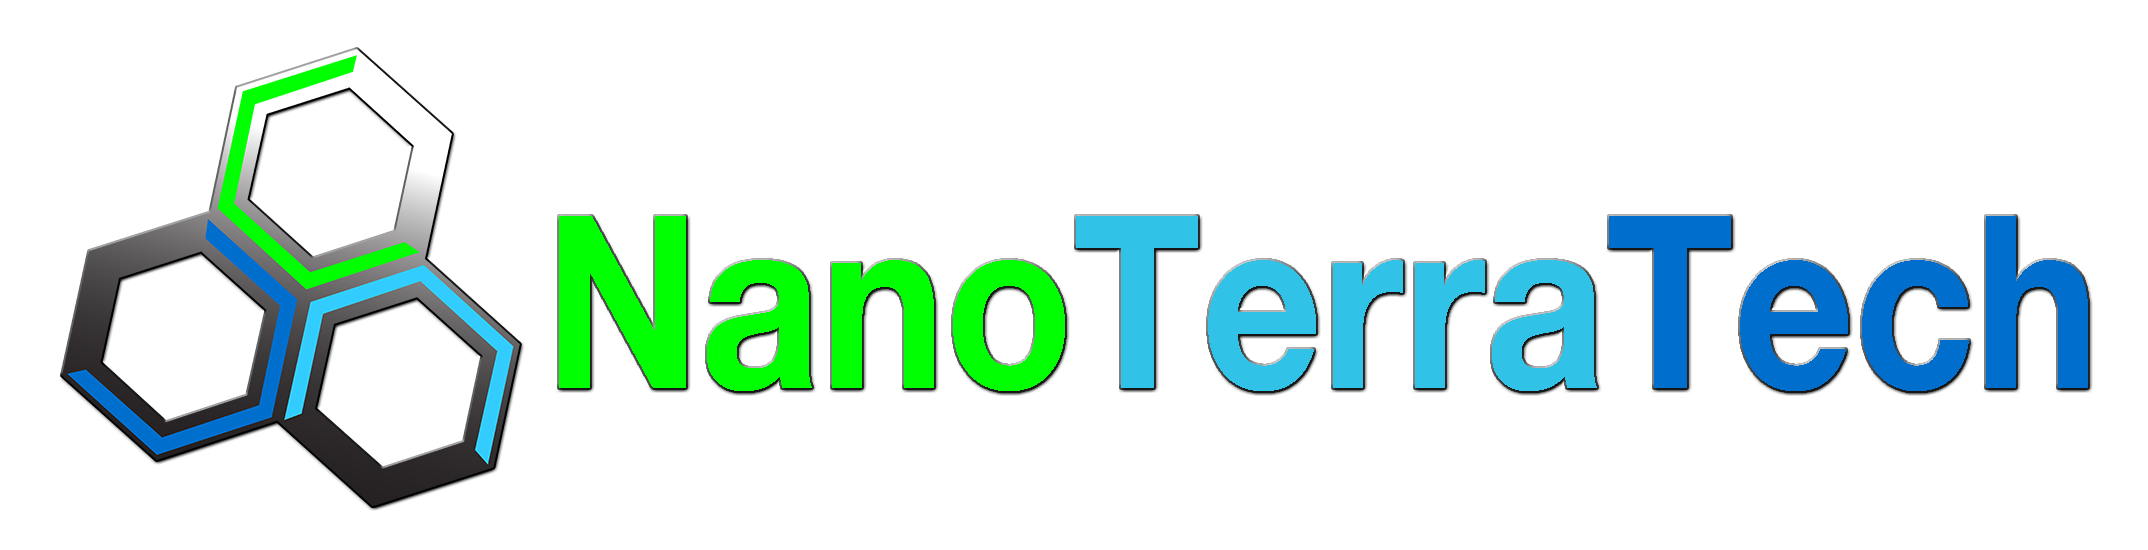 NanoTerraTech Advanced Materials